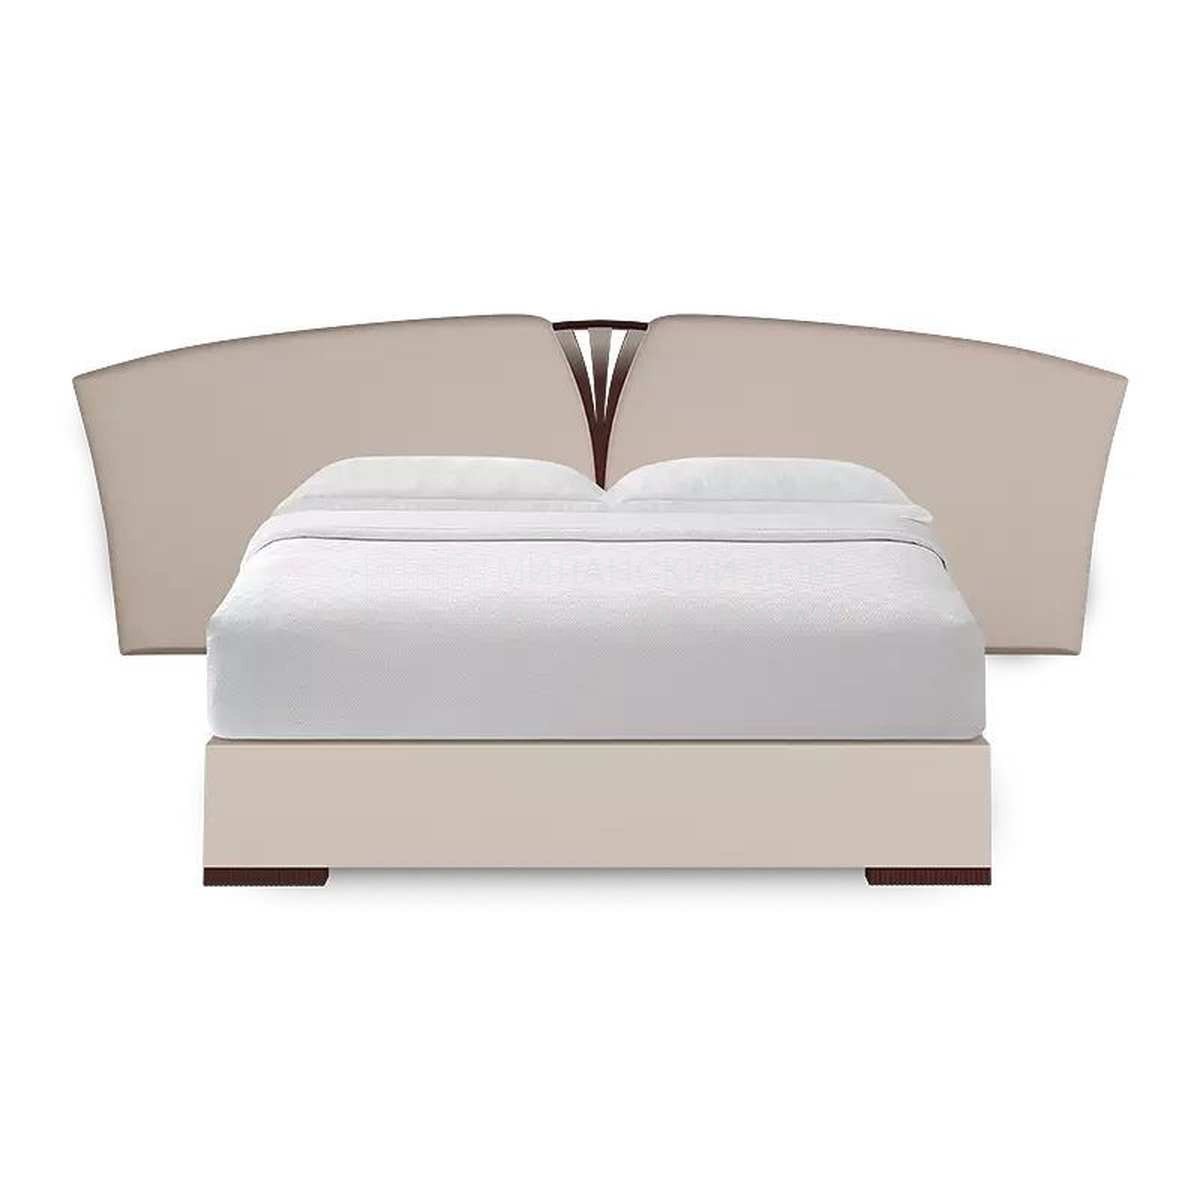 Двуспальная кровать Alma bed  из США фабрики CHRISTOPHER GUY